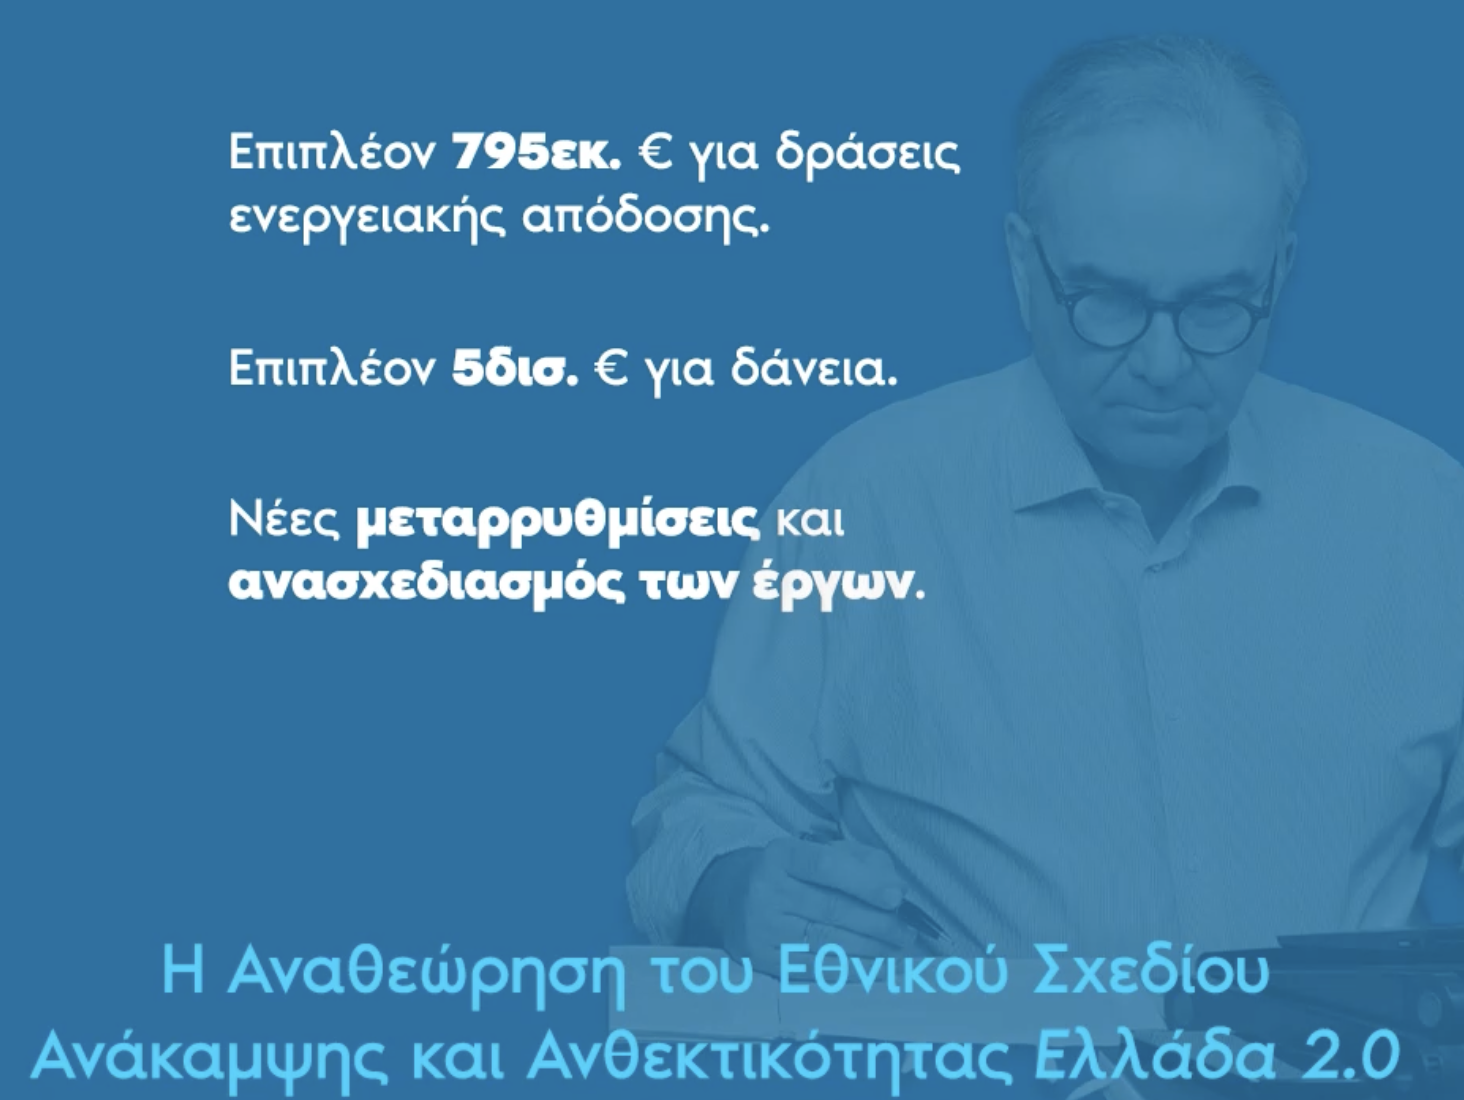 Δικαίωση της εθνικής προσπάθειας η απόφαση του ECOFIN για έγκριση του Εθνικού Σχεδίου Ανάκαμψης και Ανθεκτικότητας «Ελλάδα 2.0»